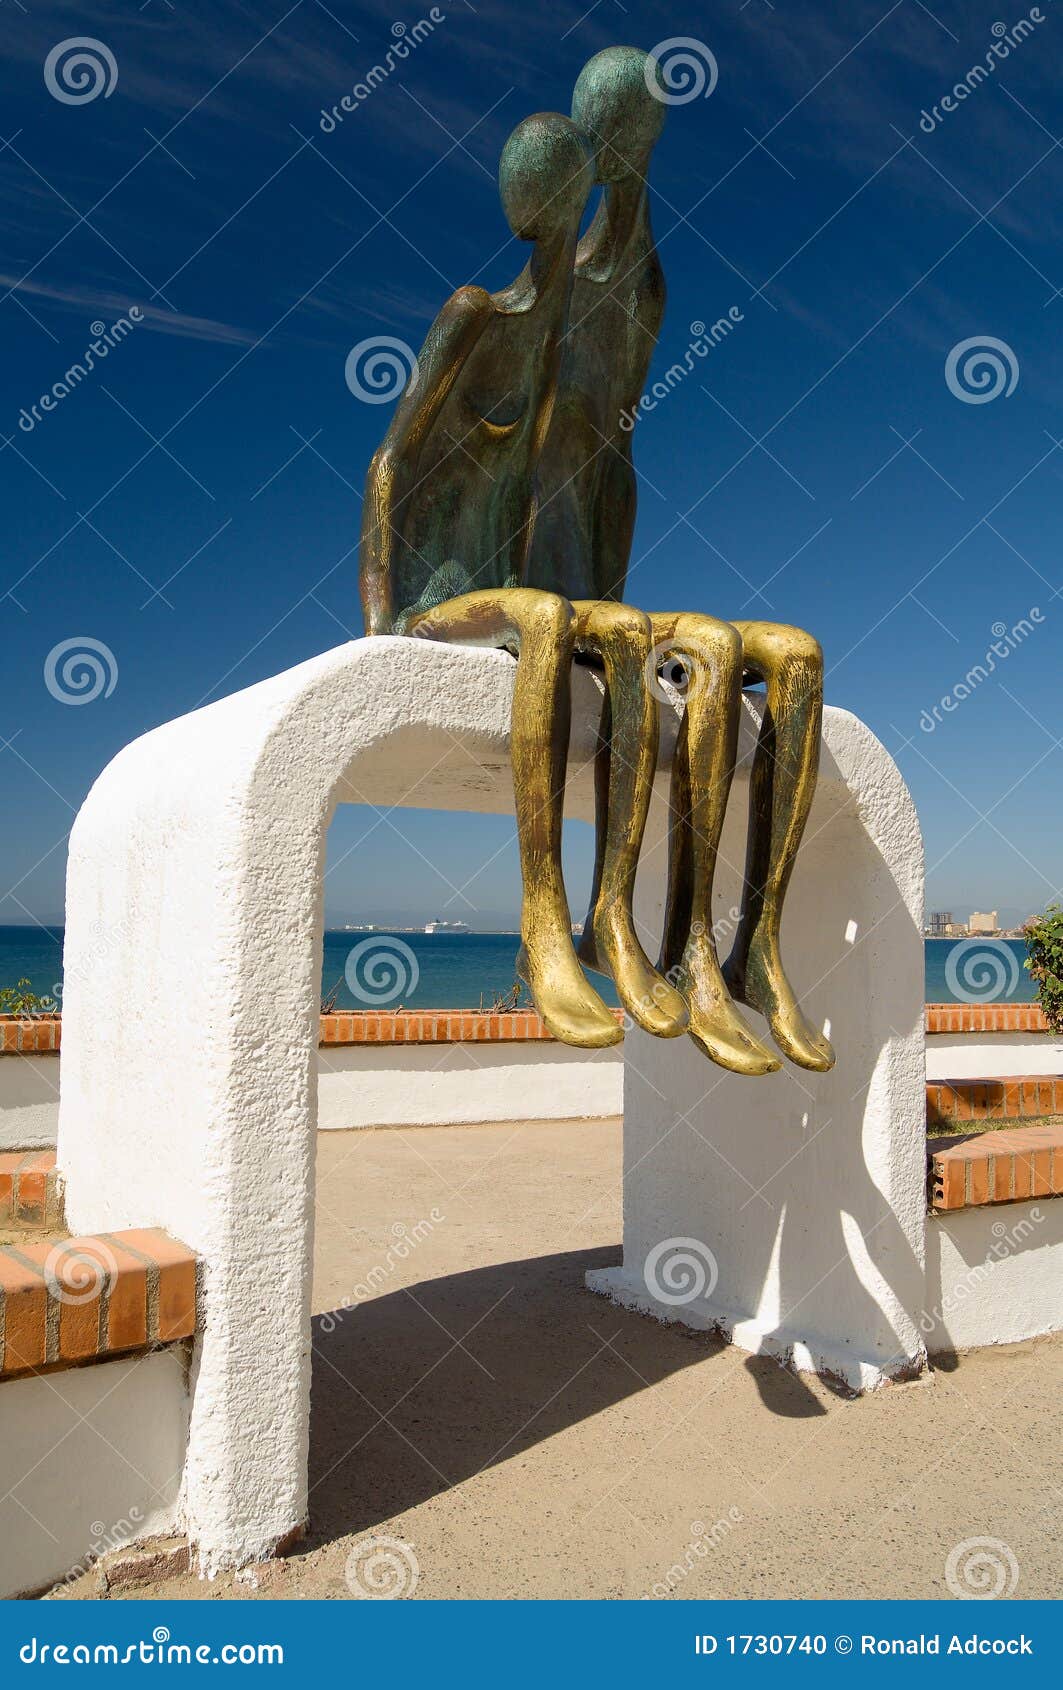 malecon statue